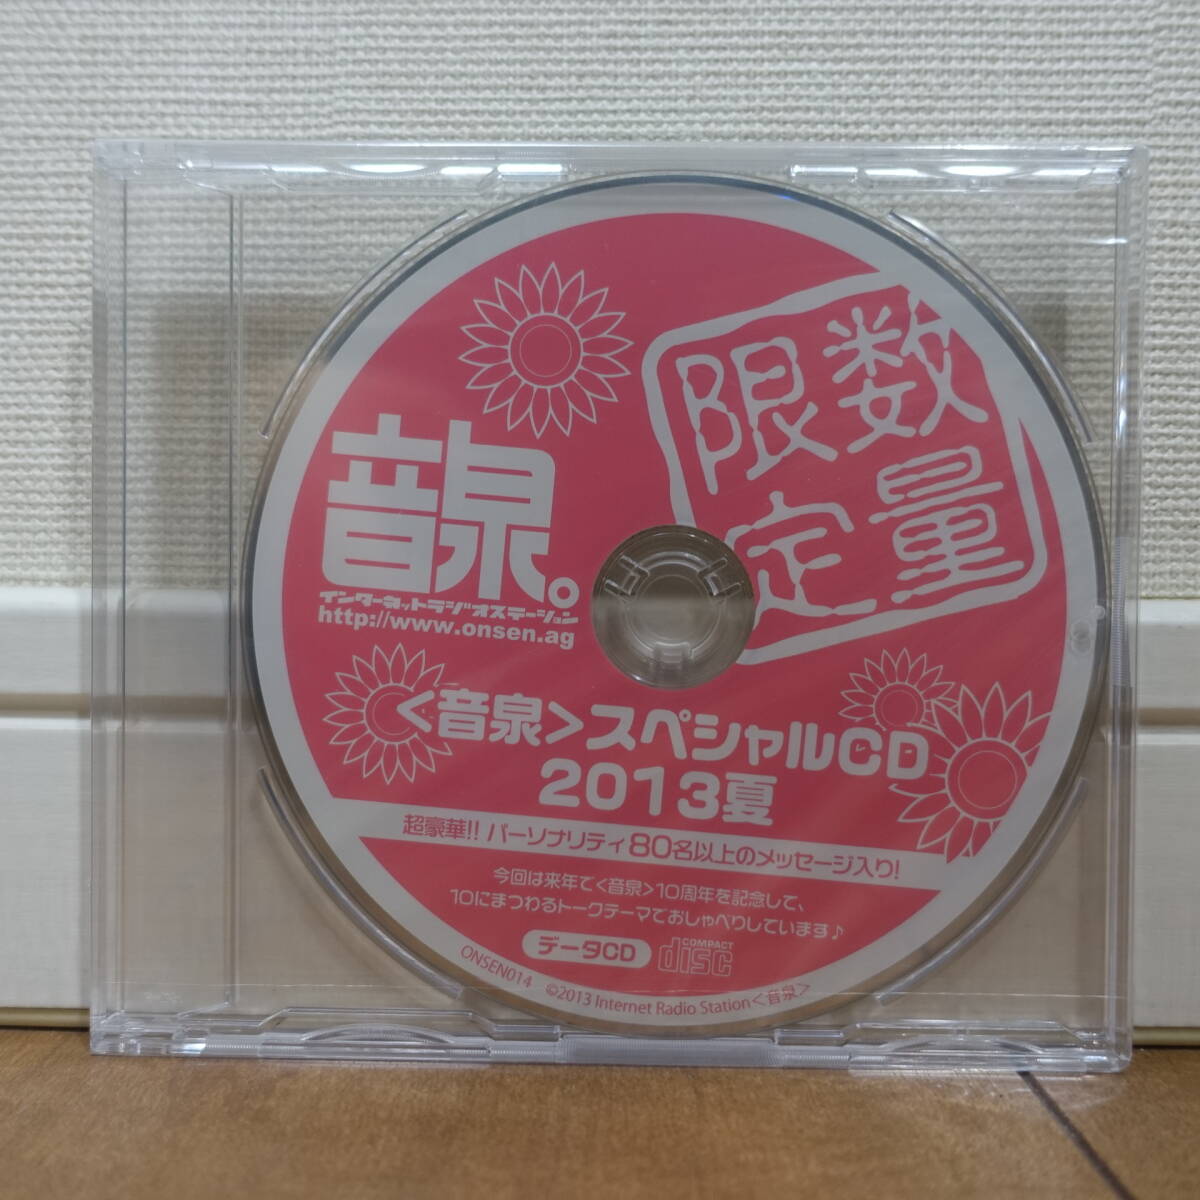 音泉 スペシャルCD 2013夏 数量限定 未開封_画像1